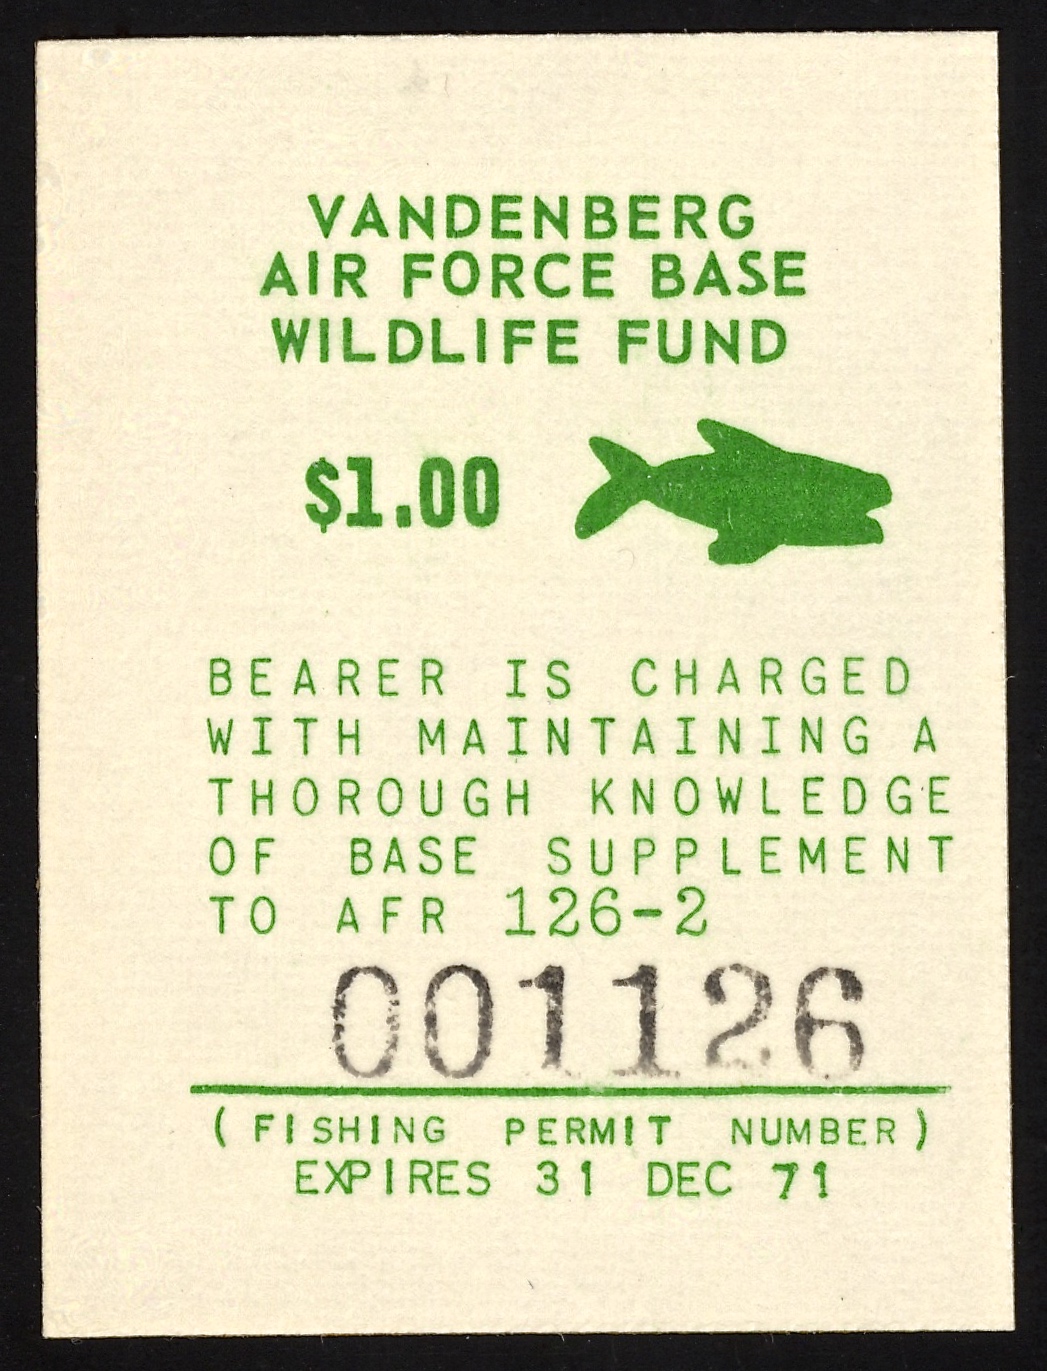 1971 VAFB Fishing